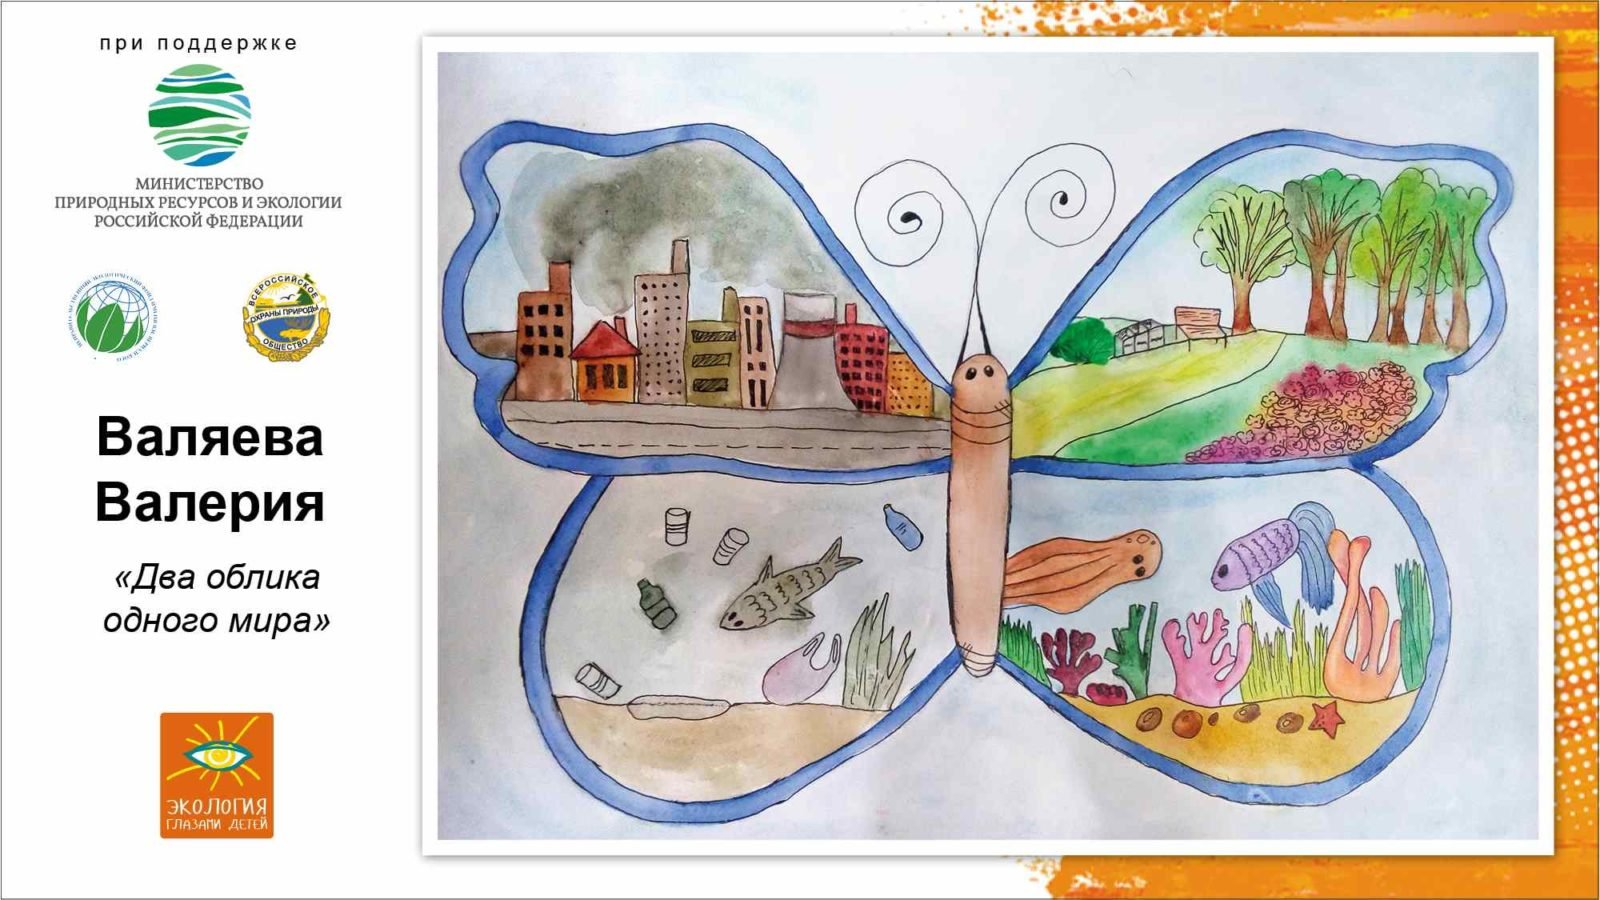 Мир воды название рисунков. Конкурс рисунков на тему экология. Конкурс экологических рисунков. Конкурсы детского рисунка на тему экологии. Конкурс рисунков по экологии.